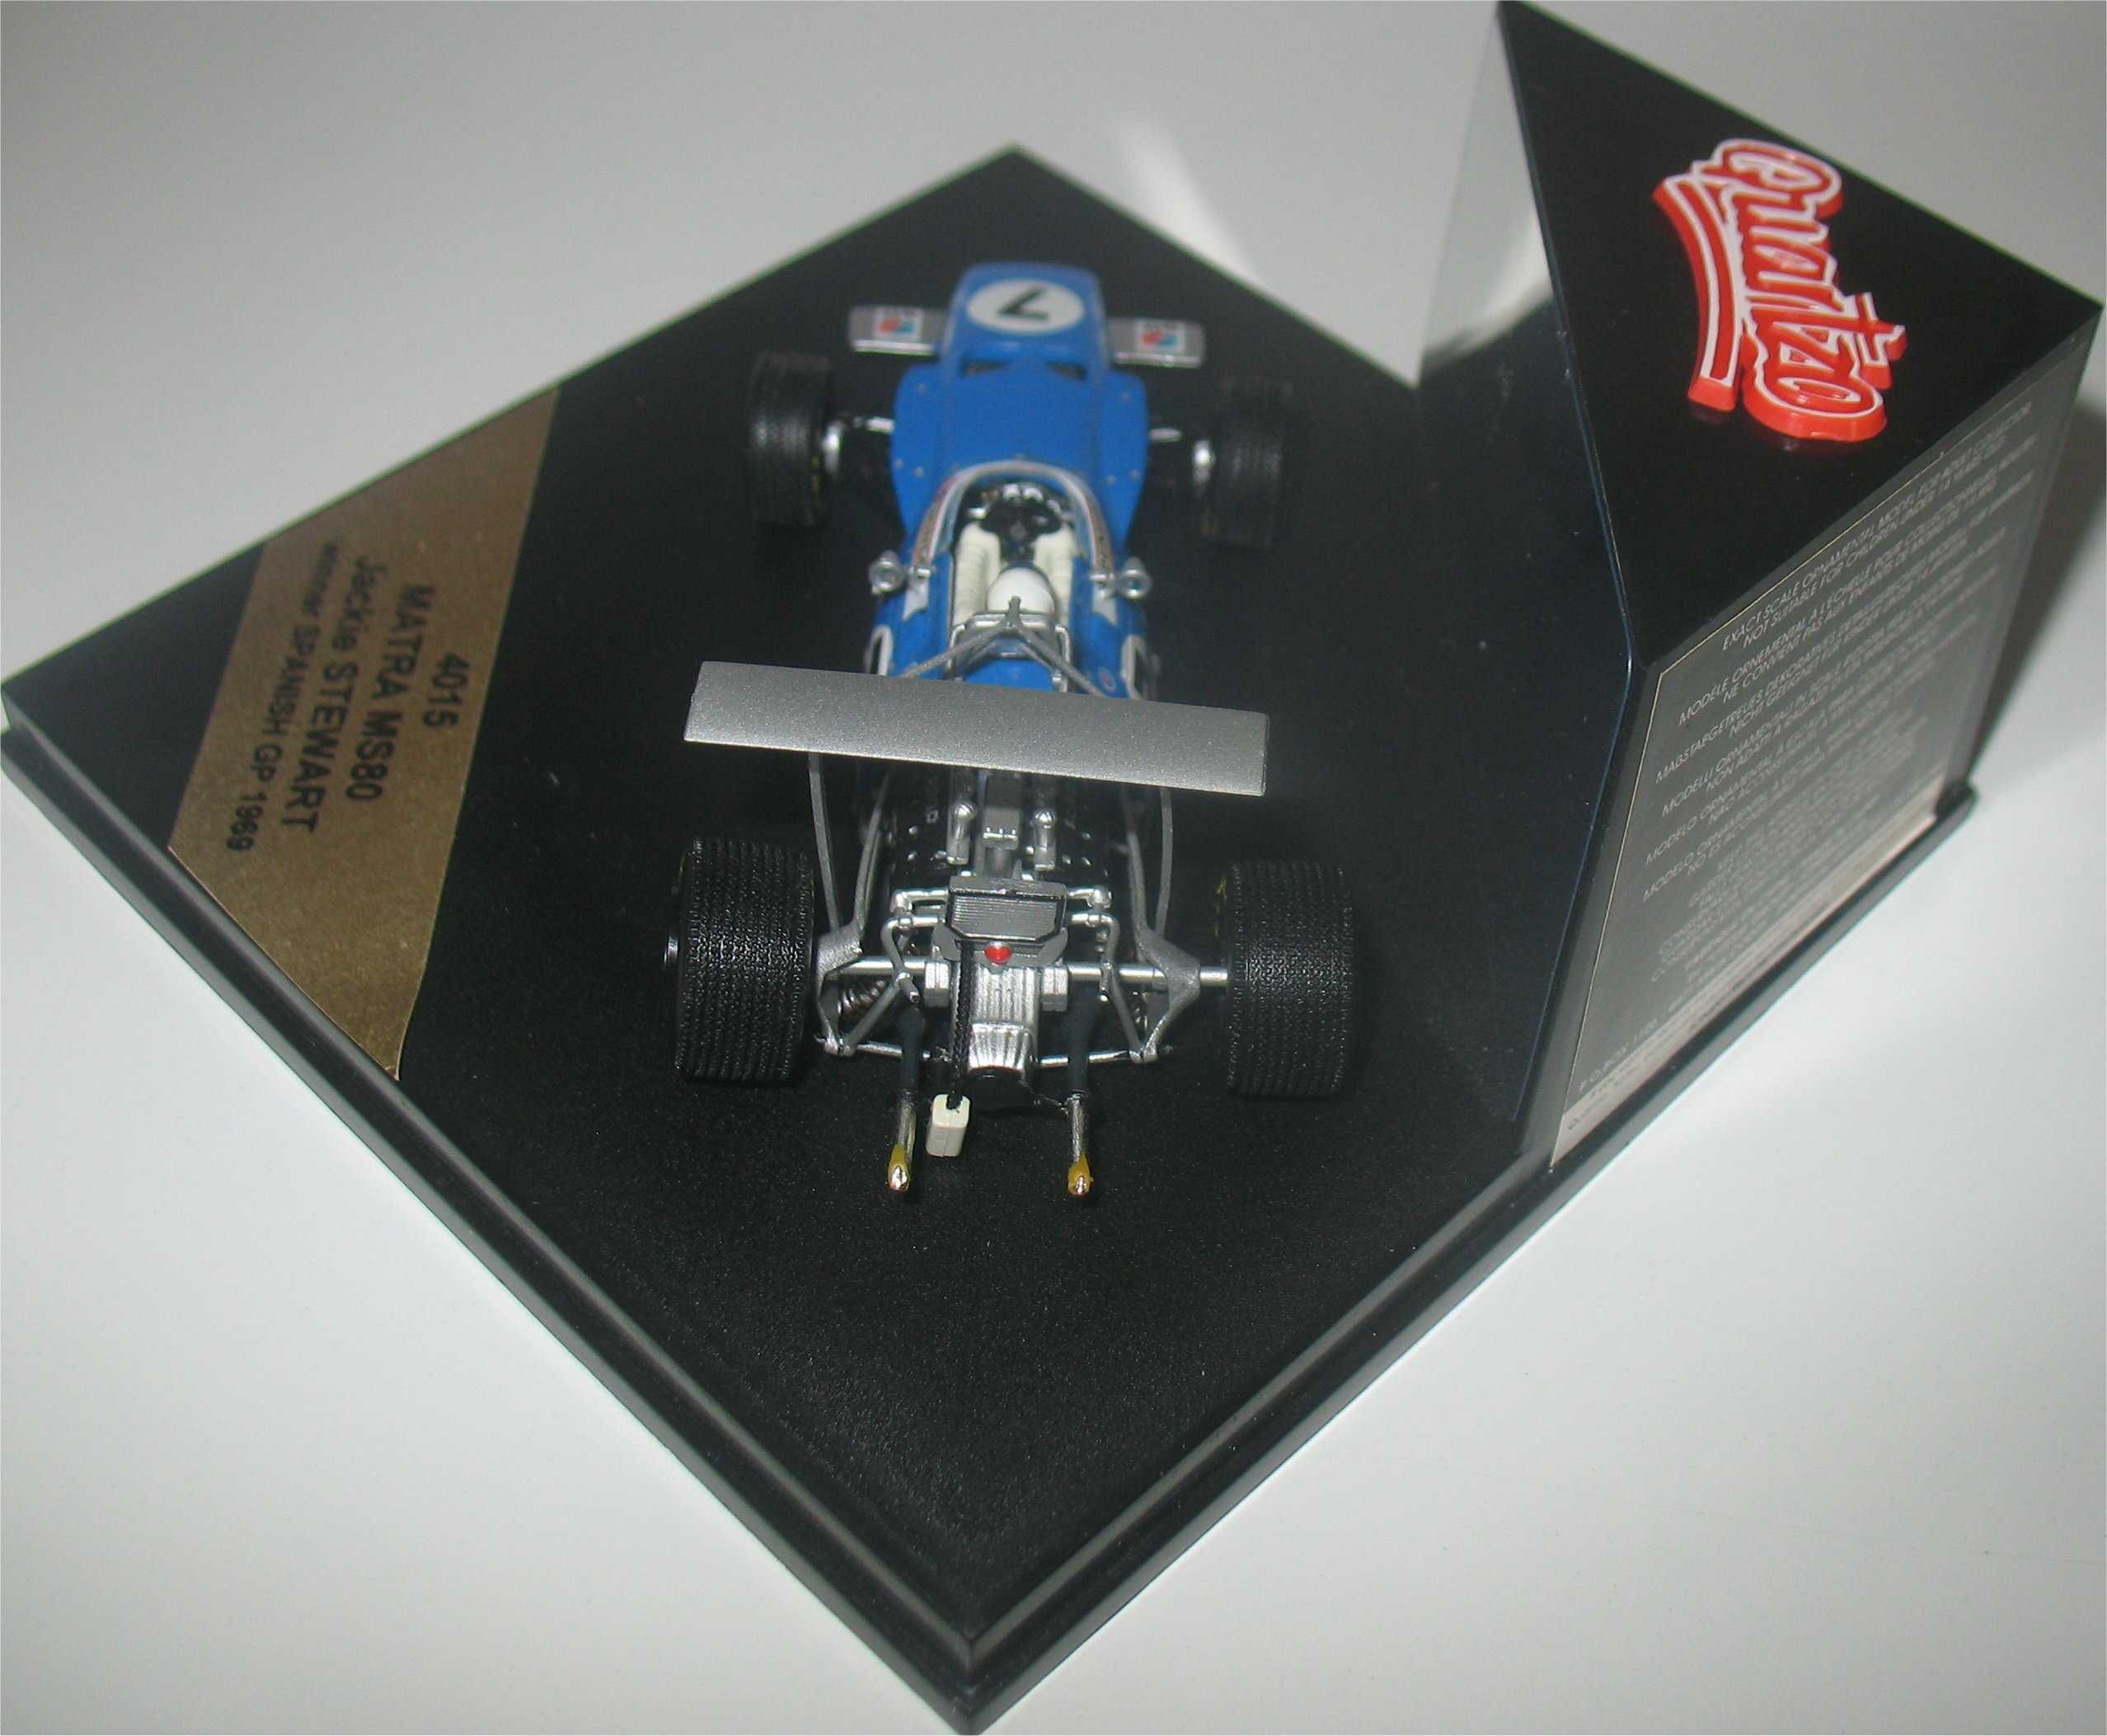 Quartzo - Matra MS80 -Vencedor GP Espanha 69- Jackie Stewart